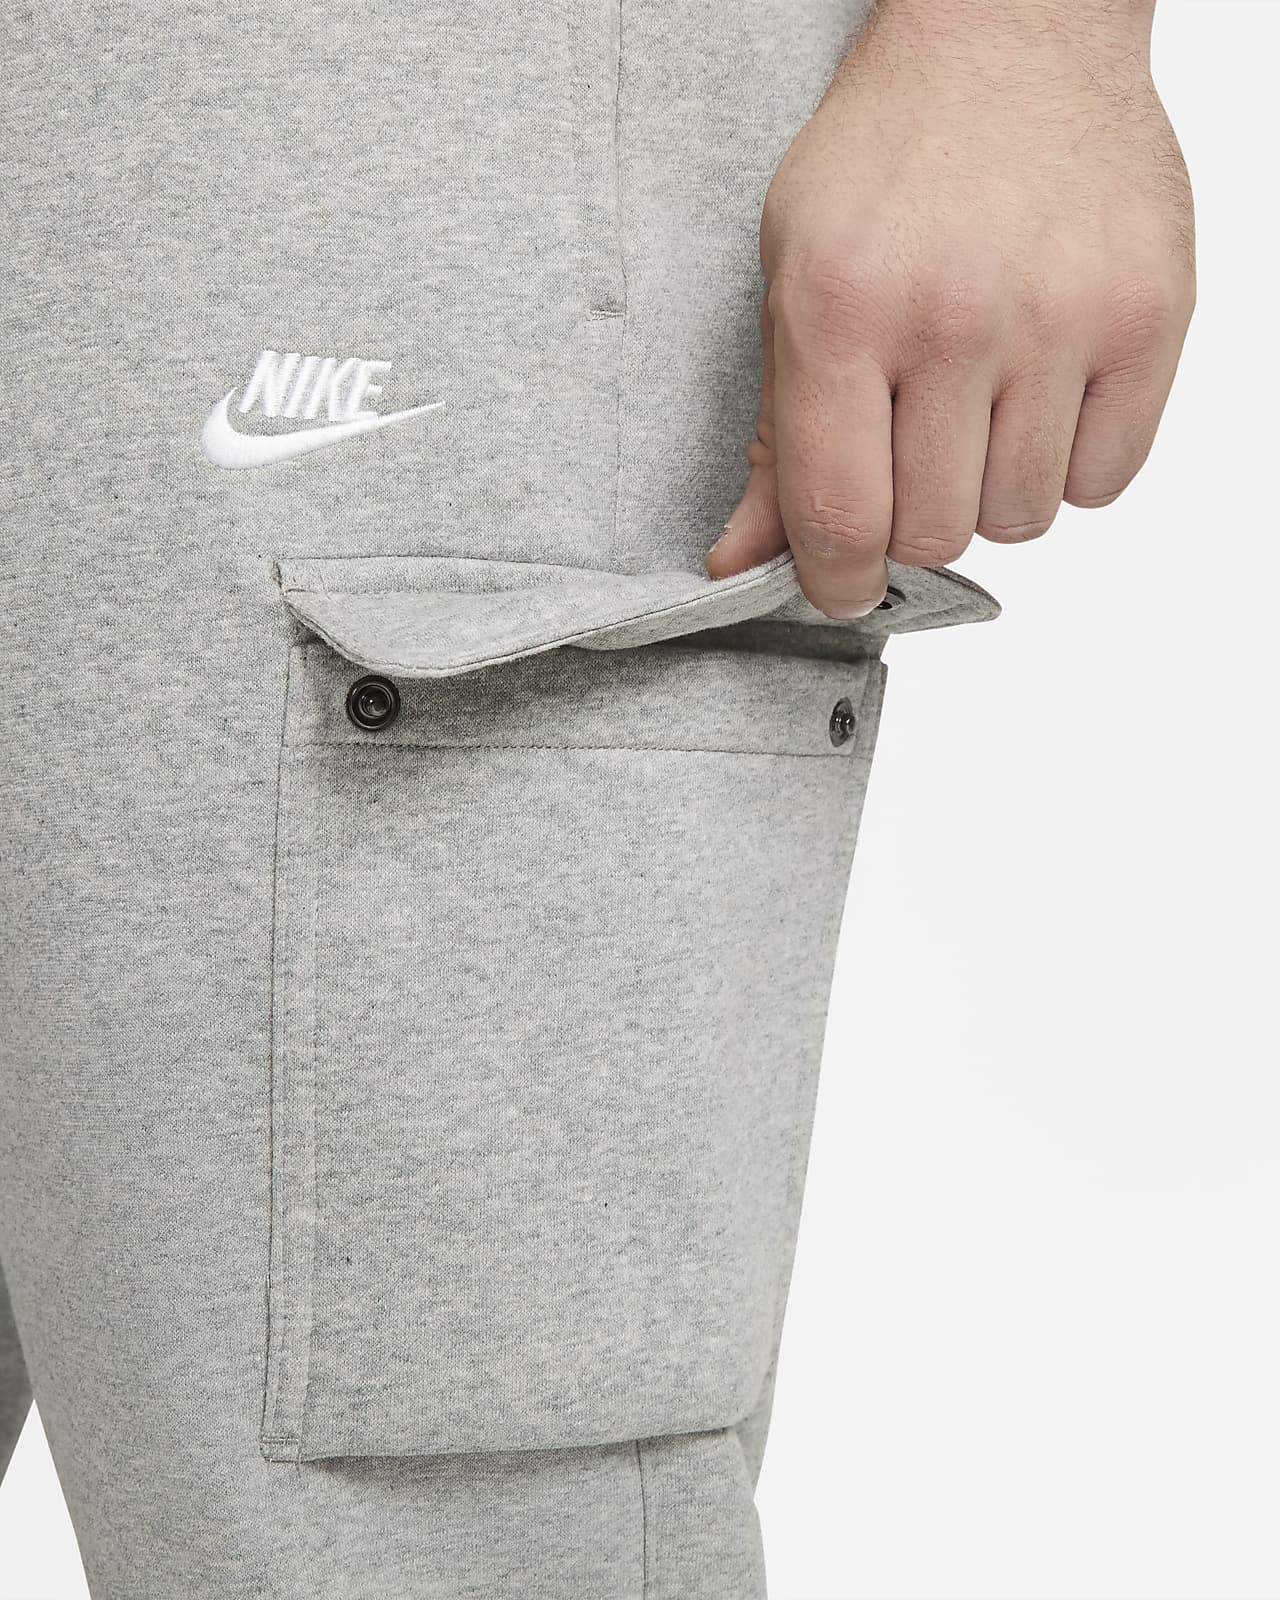 Pantalon Nike Sportswear Club Fleece pour Homme